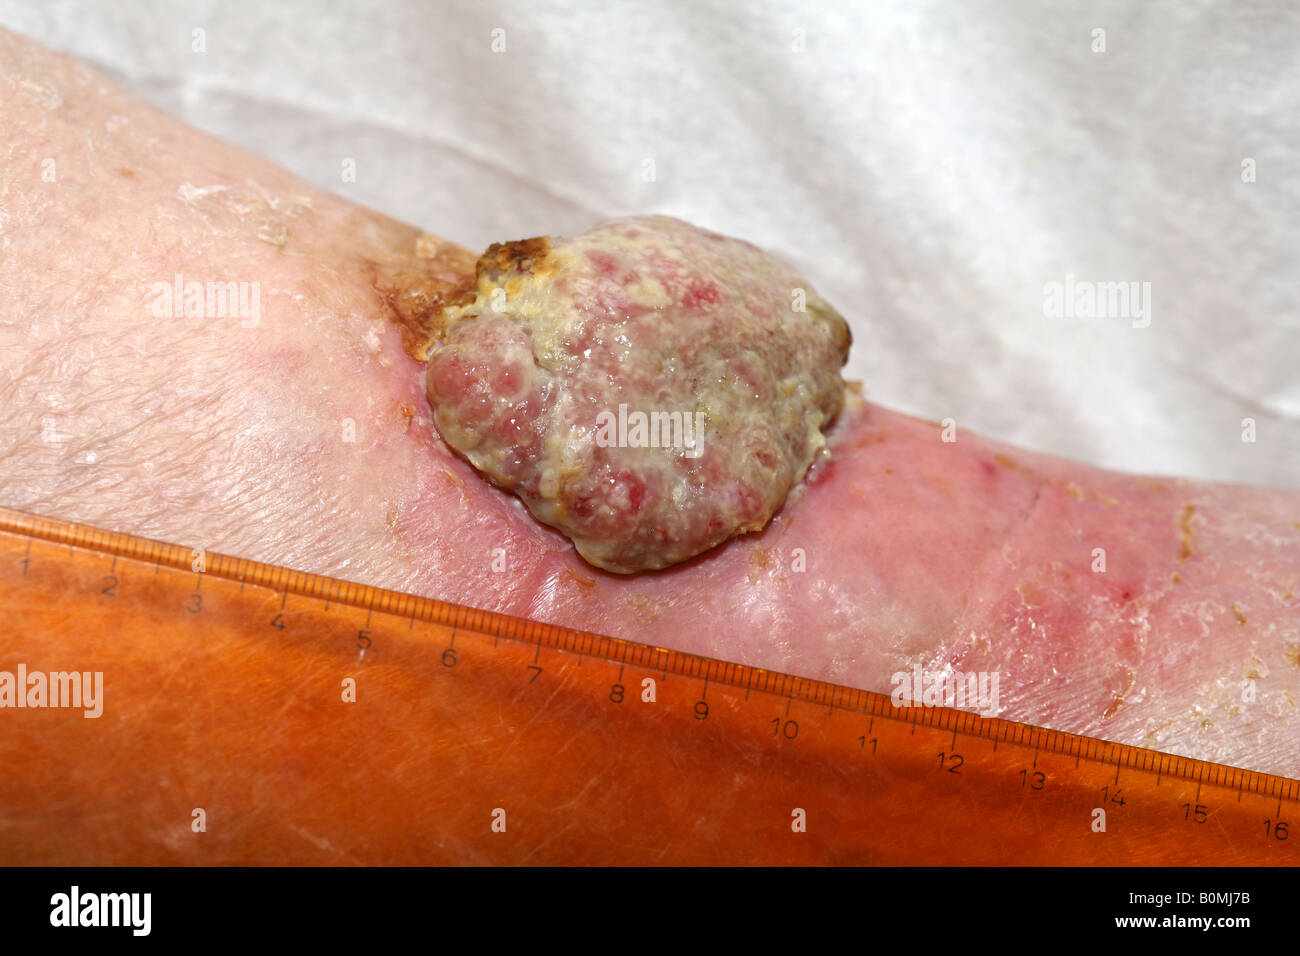 Ein 5cm malignen Plattenepithelkarzinom (Hautkrebs) am Unterschenkel einer älteren Frau Stockfoto